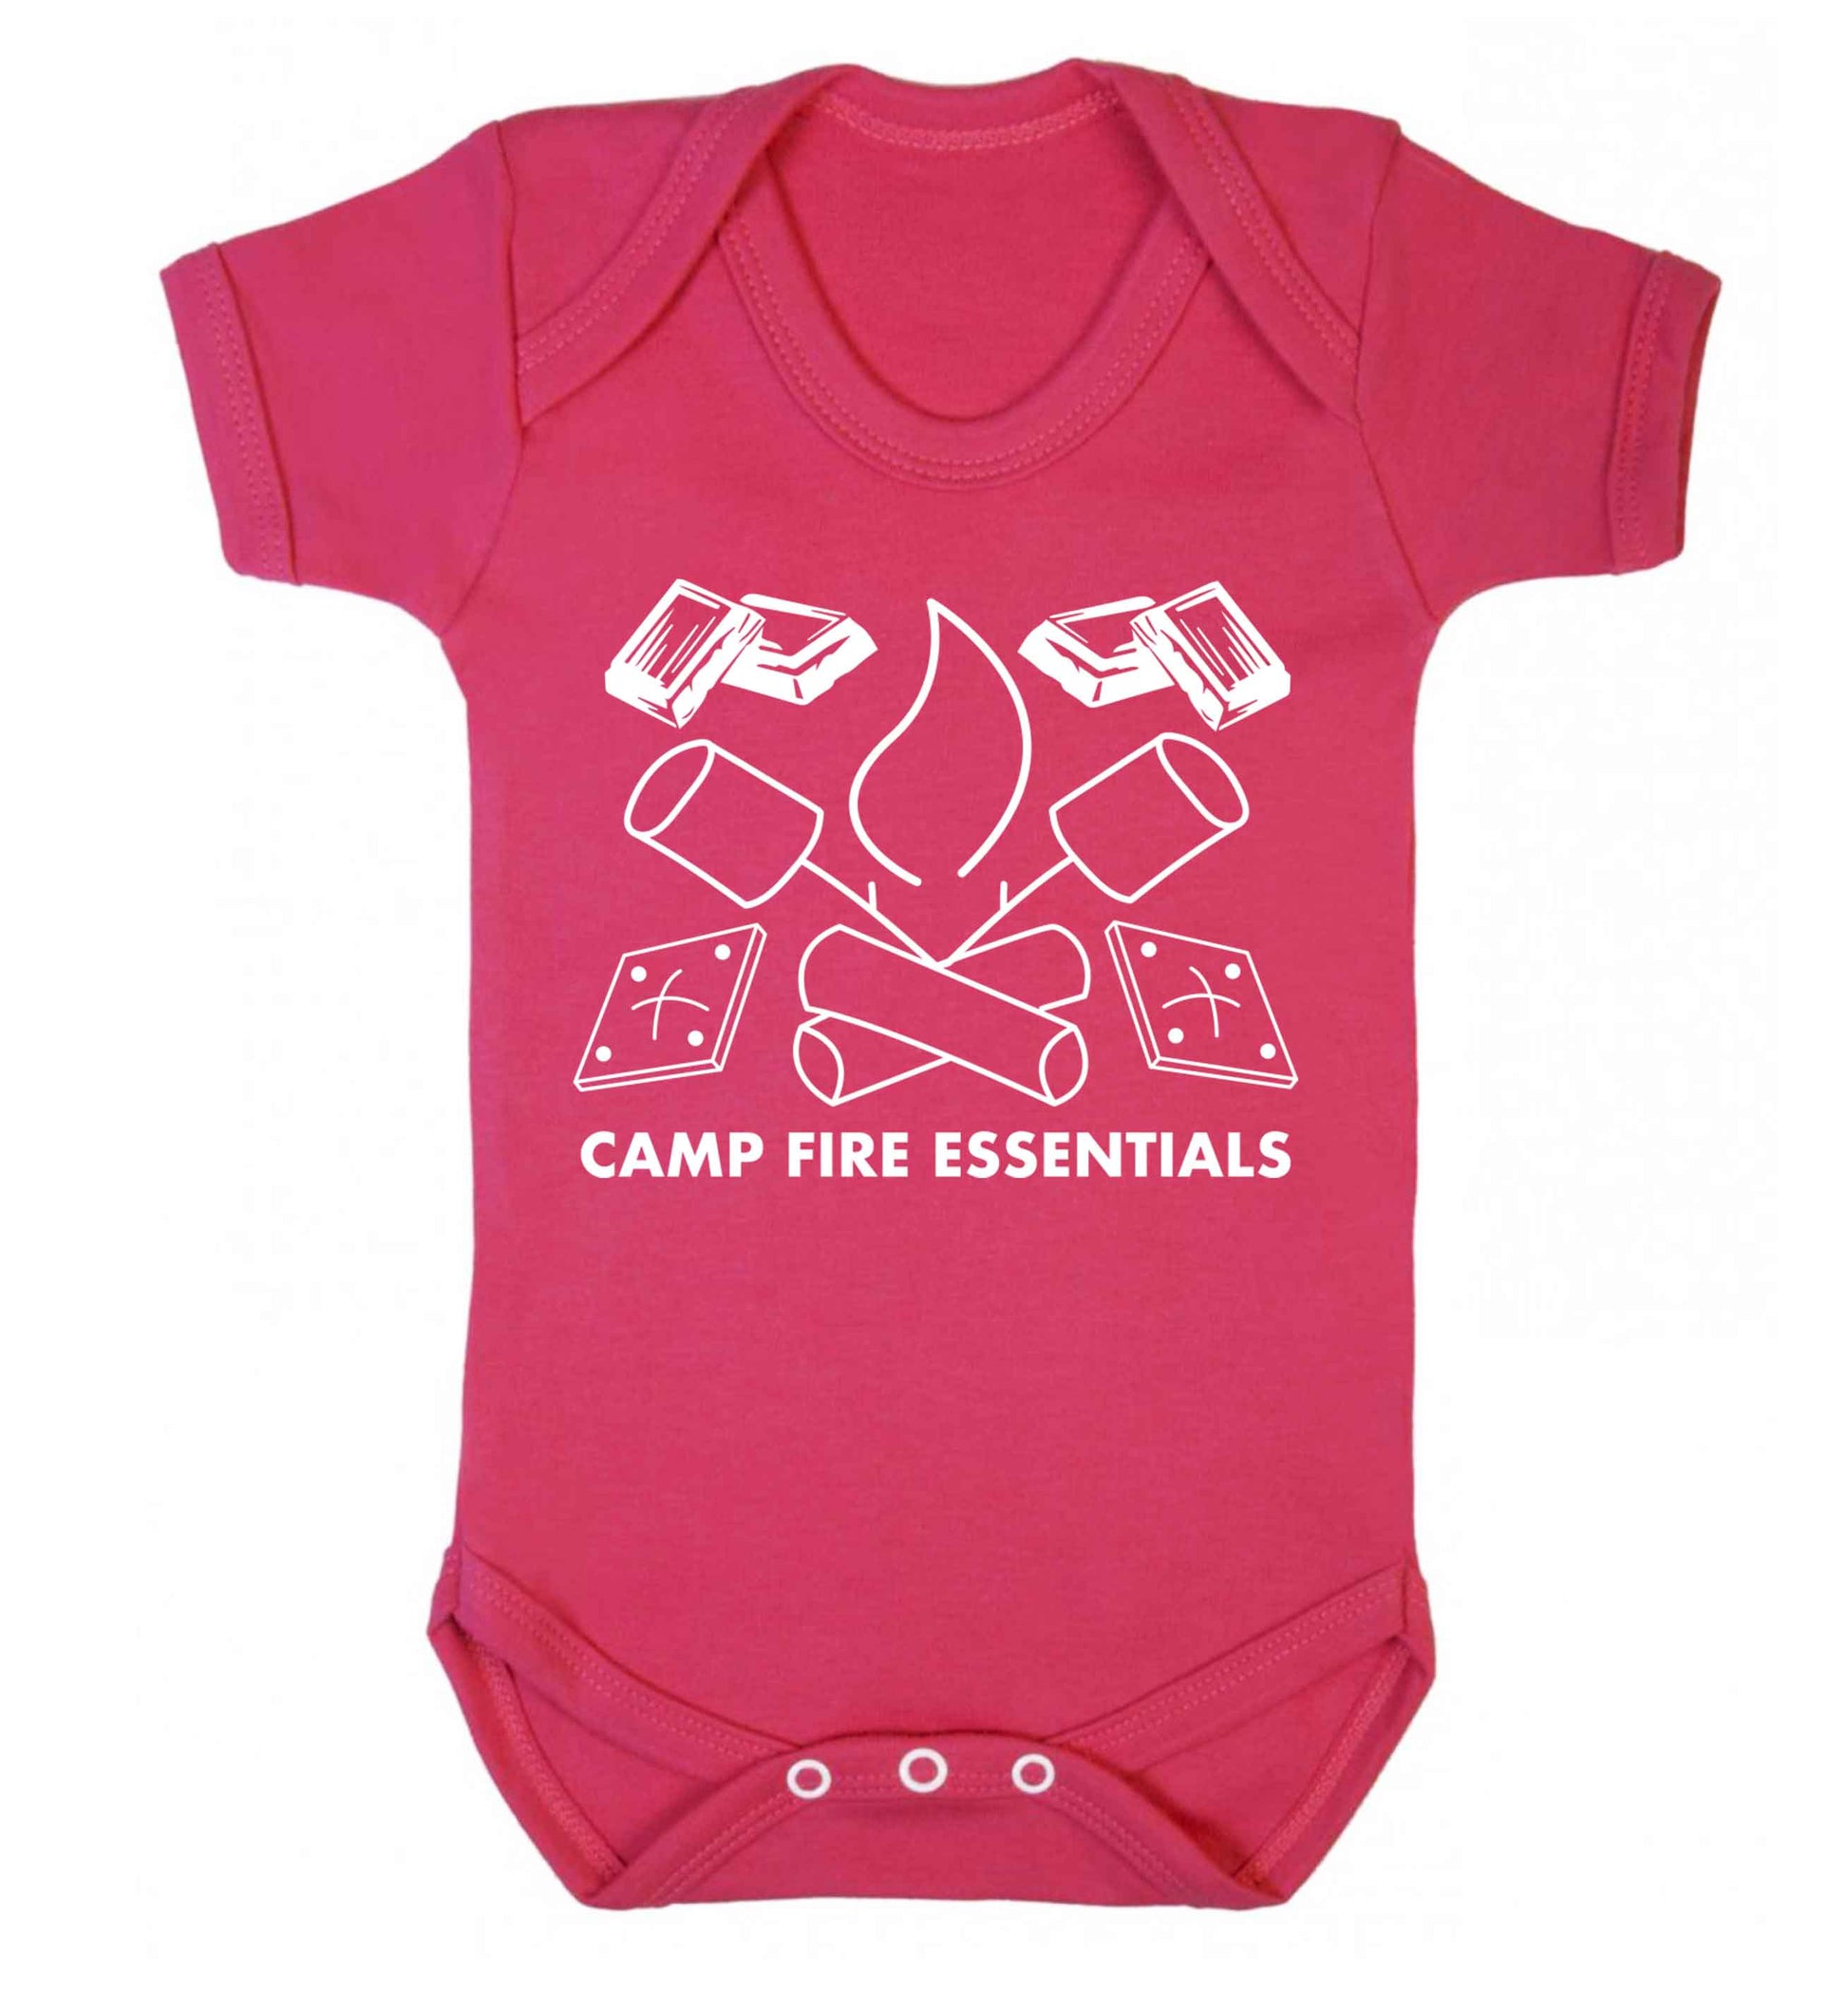 Campfire essentials Baby Vest dark pink 18-24 months